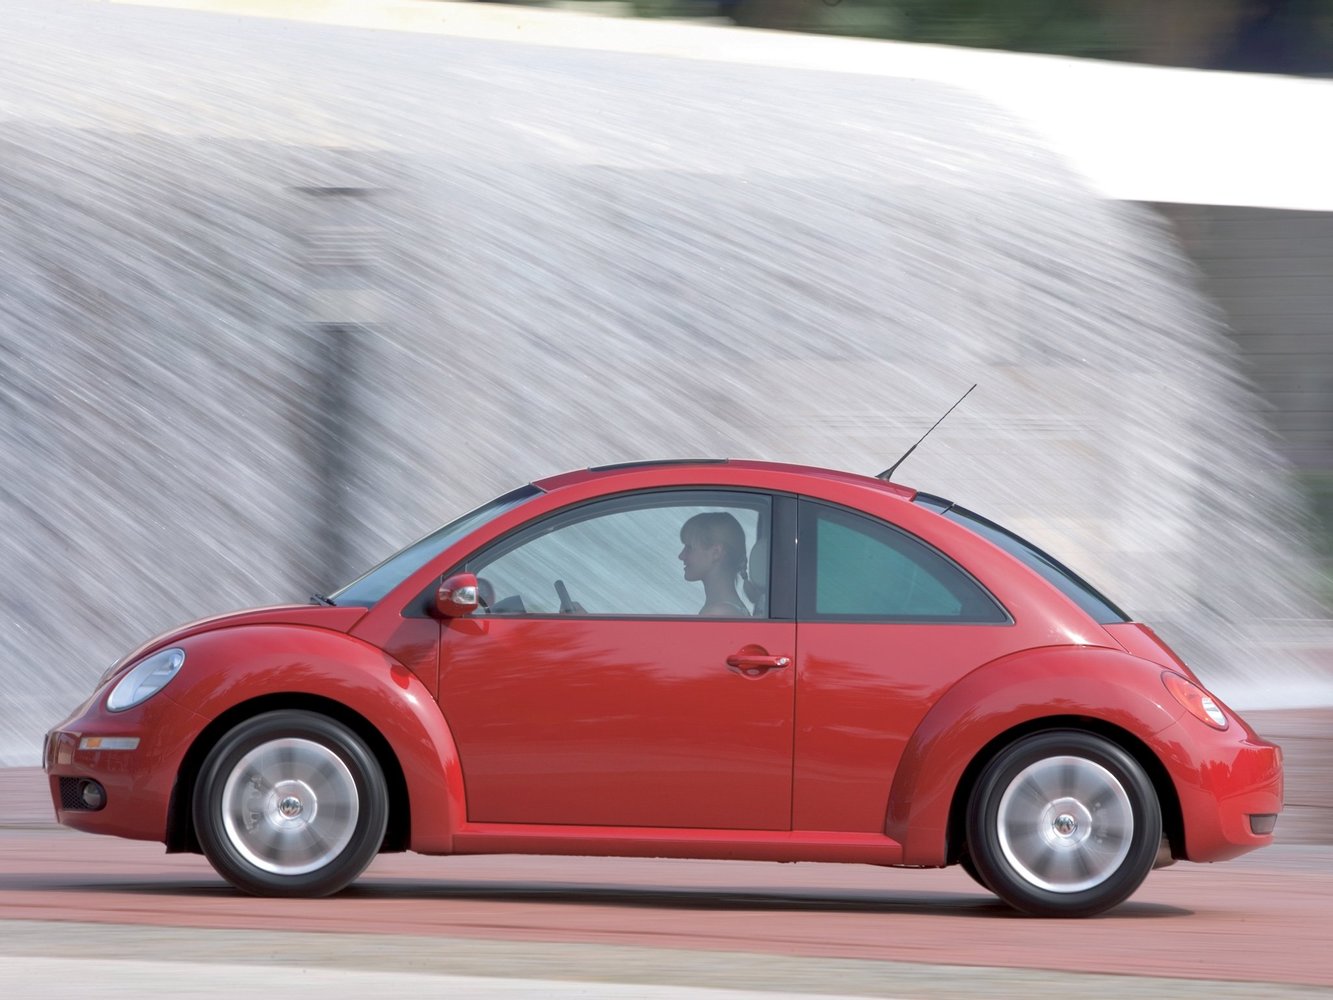 хэтчбек 3 дв. Volkswagen Beetle 2005 - 2010г выпуска модификация 1.4 MT (75 л.с.)